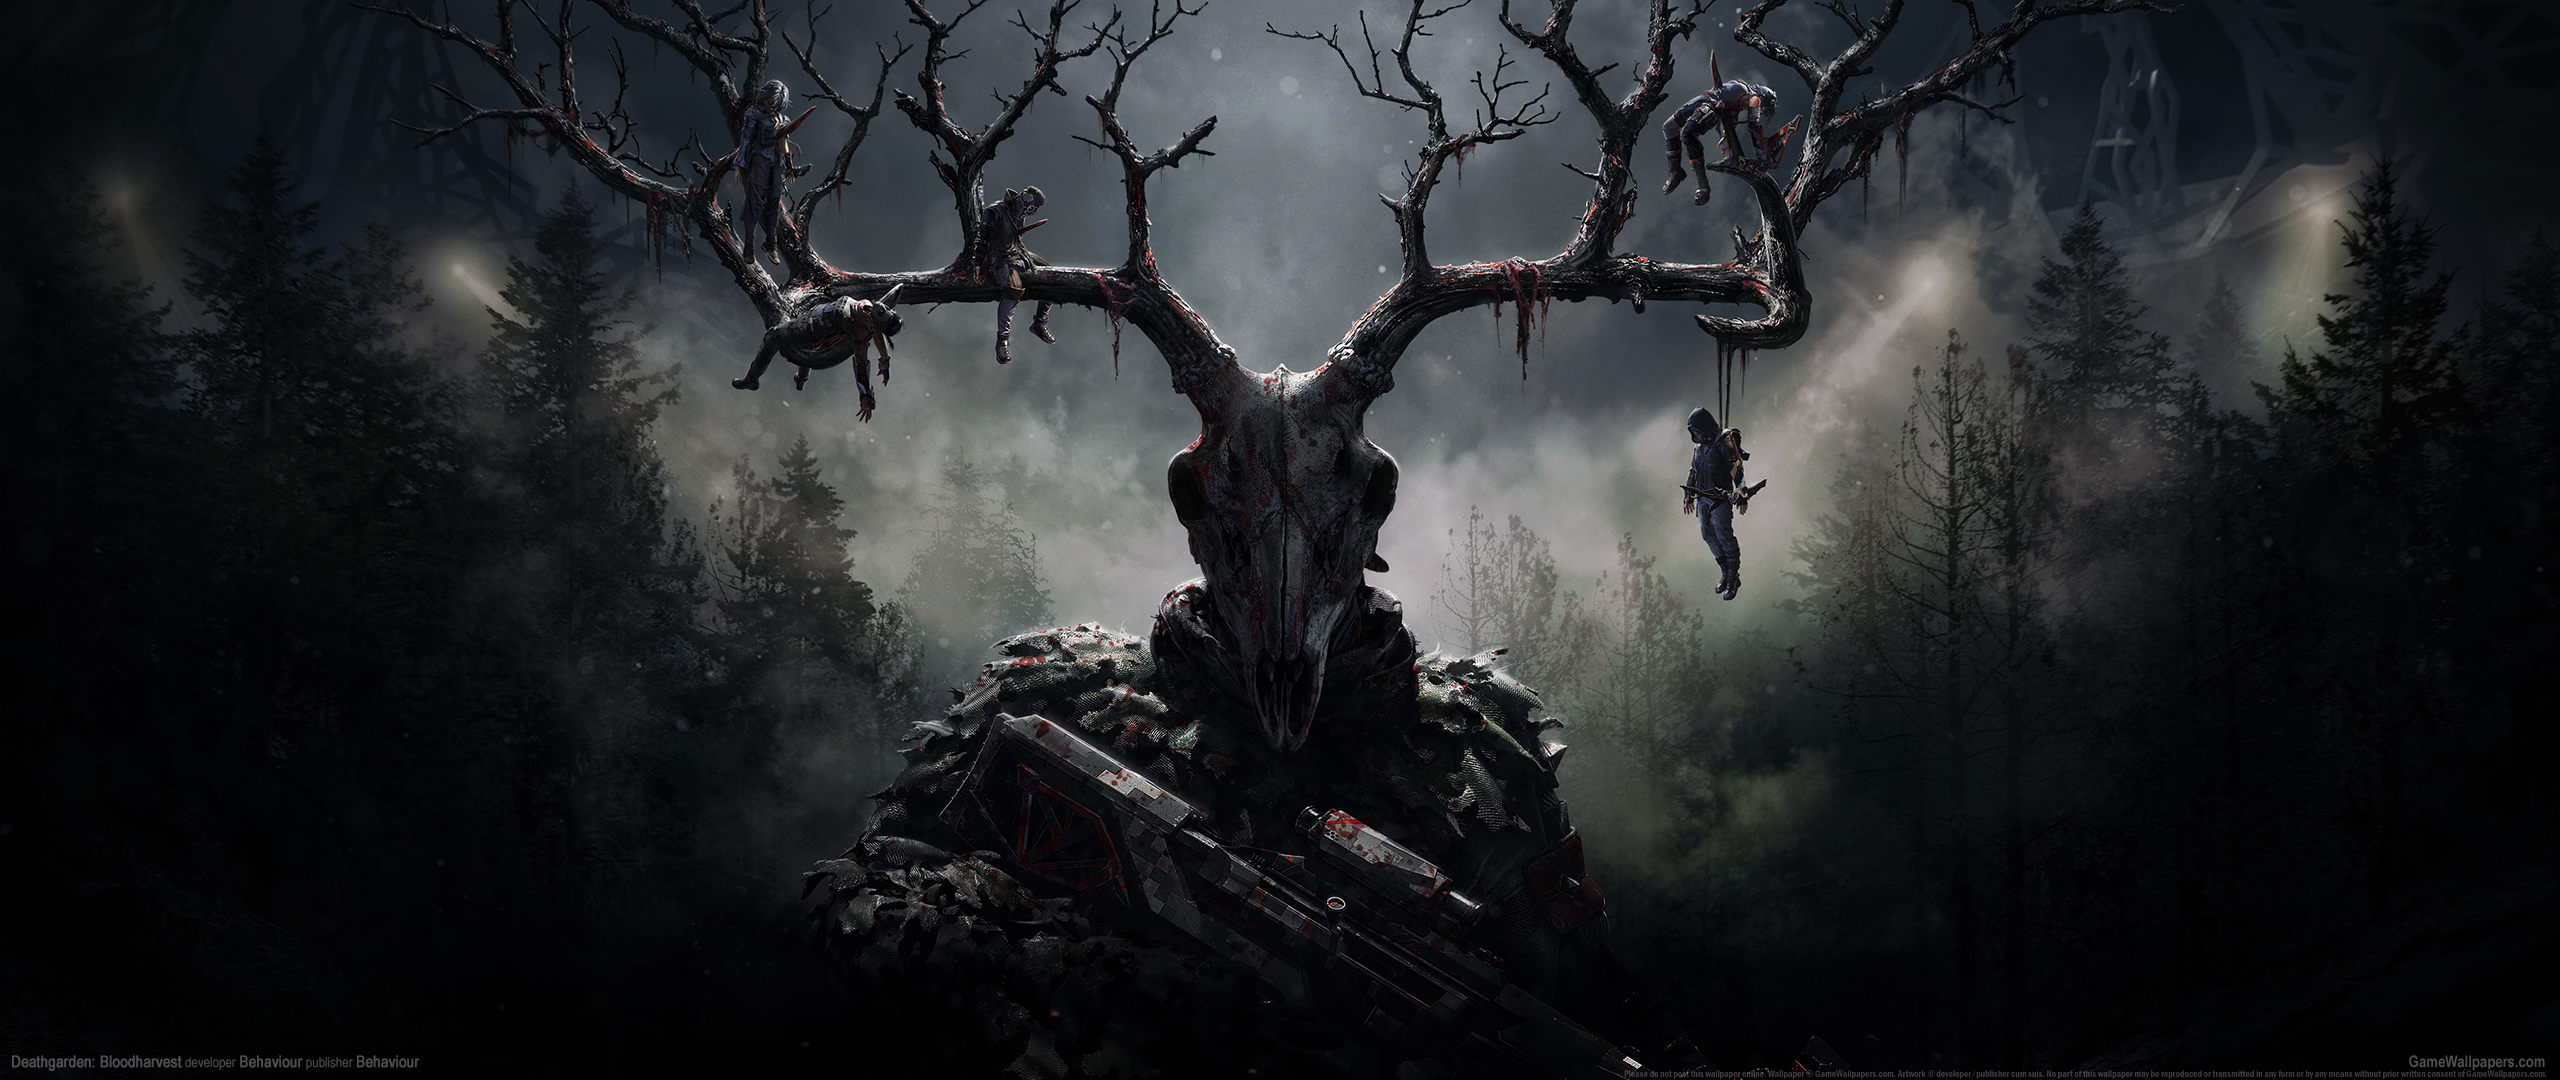 Deathgarden: Bloodharvest 2560x1080 wallpaper or background 01